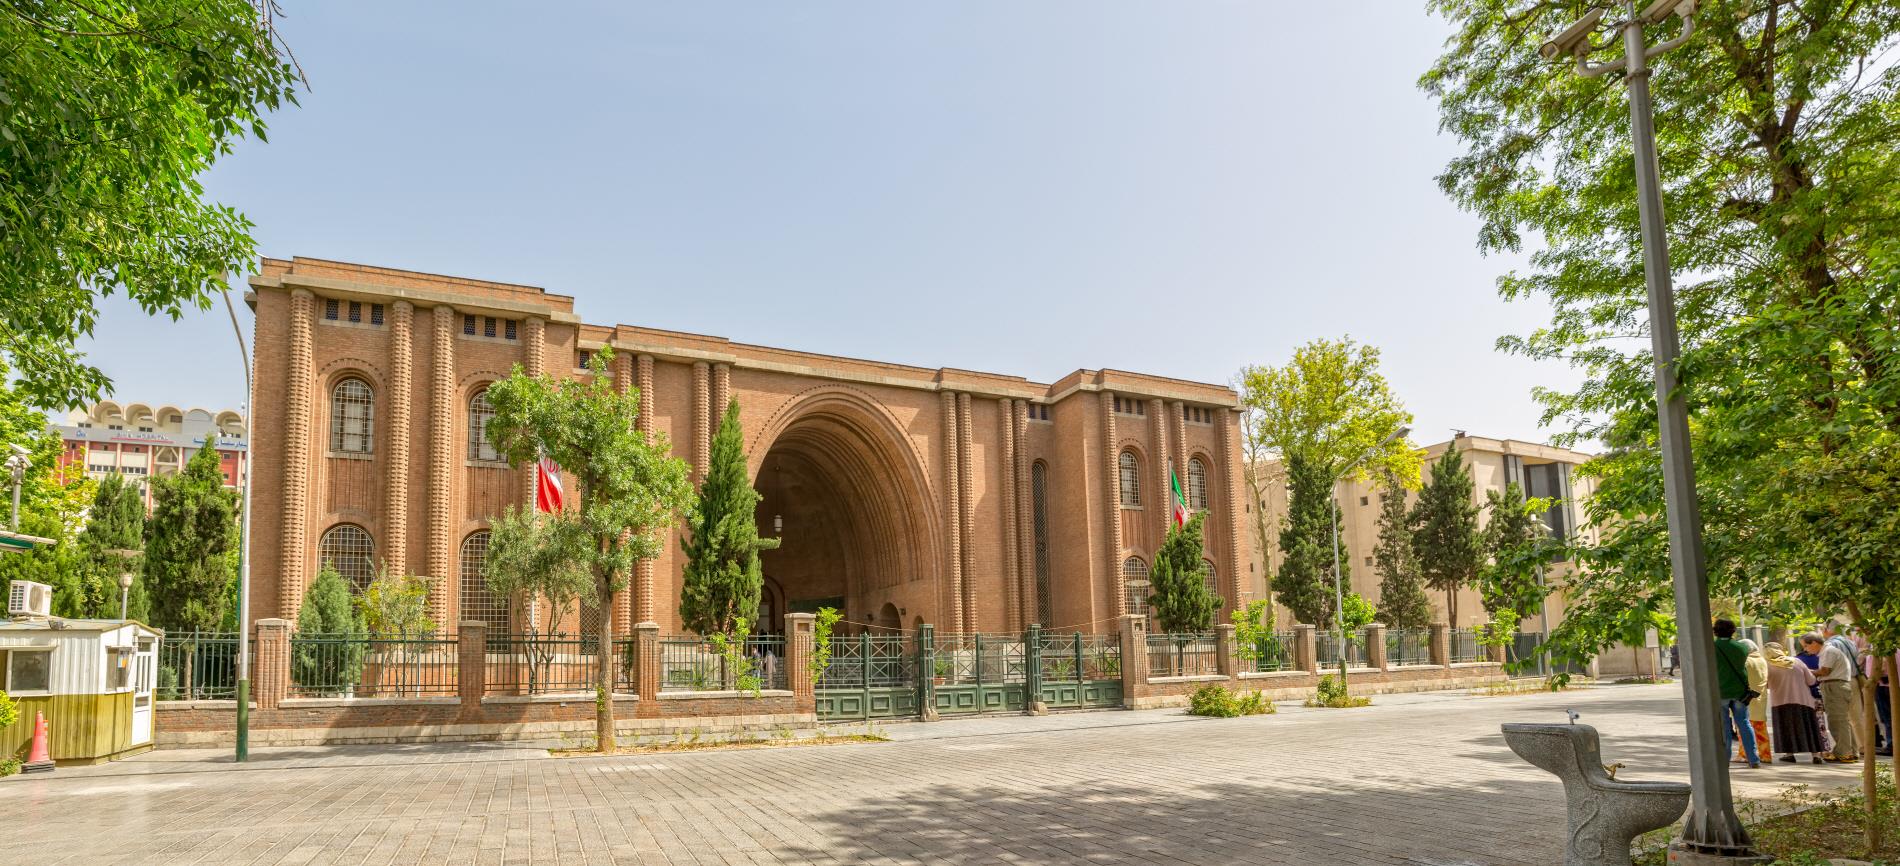 이란 국립 박물관  National Museum of Iran